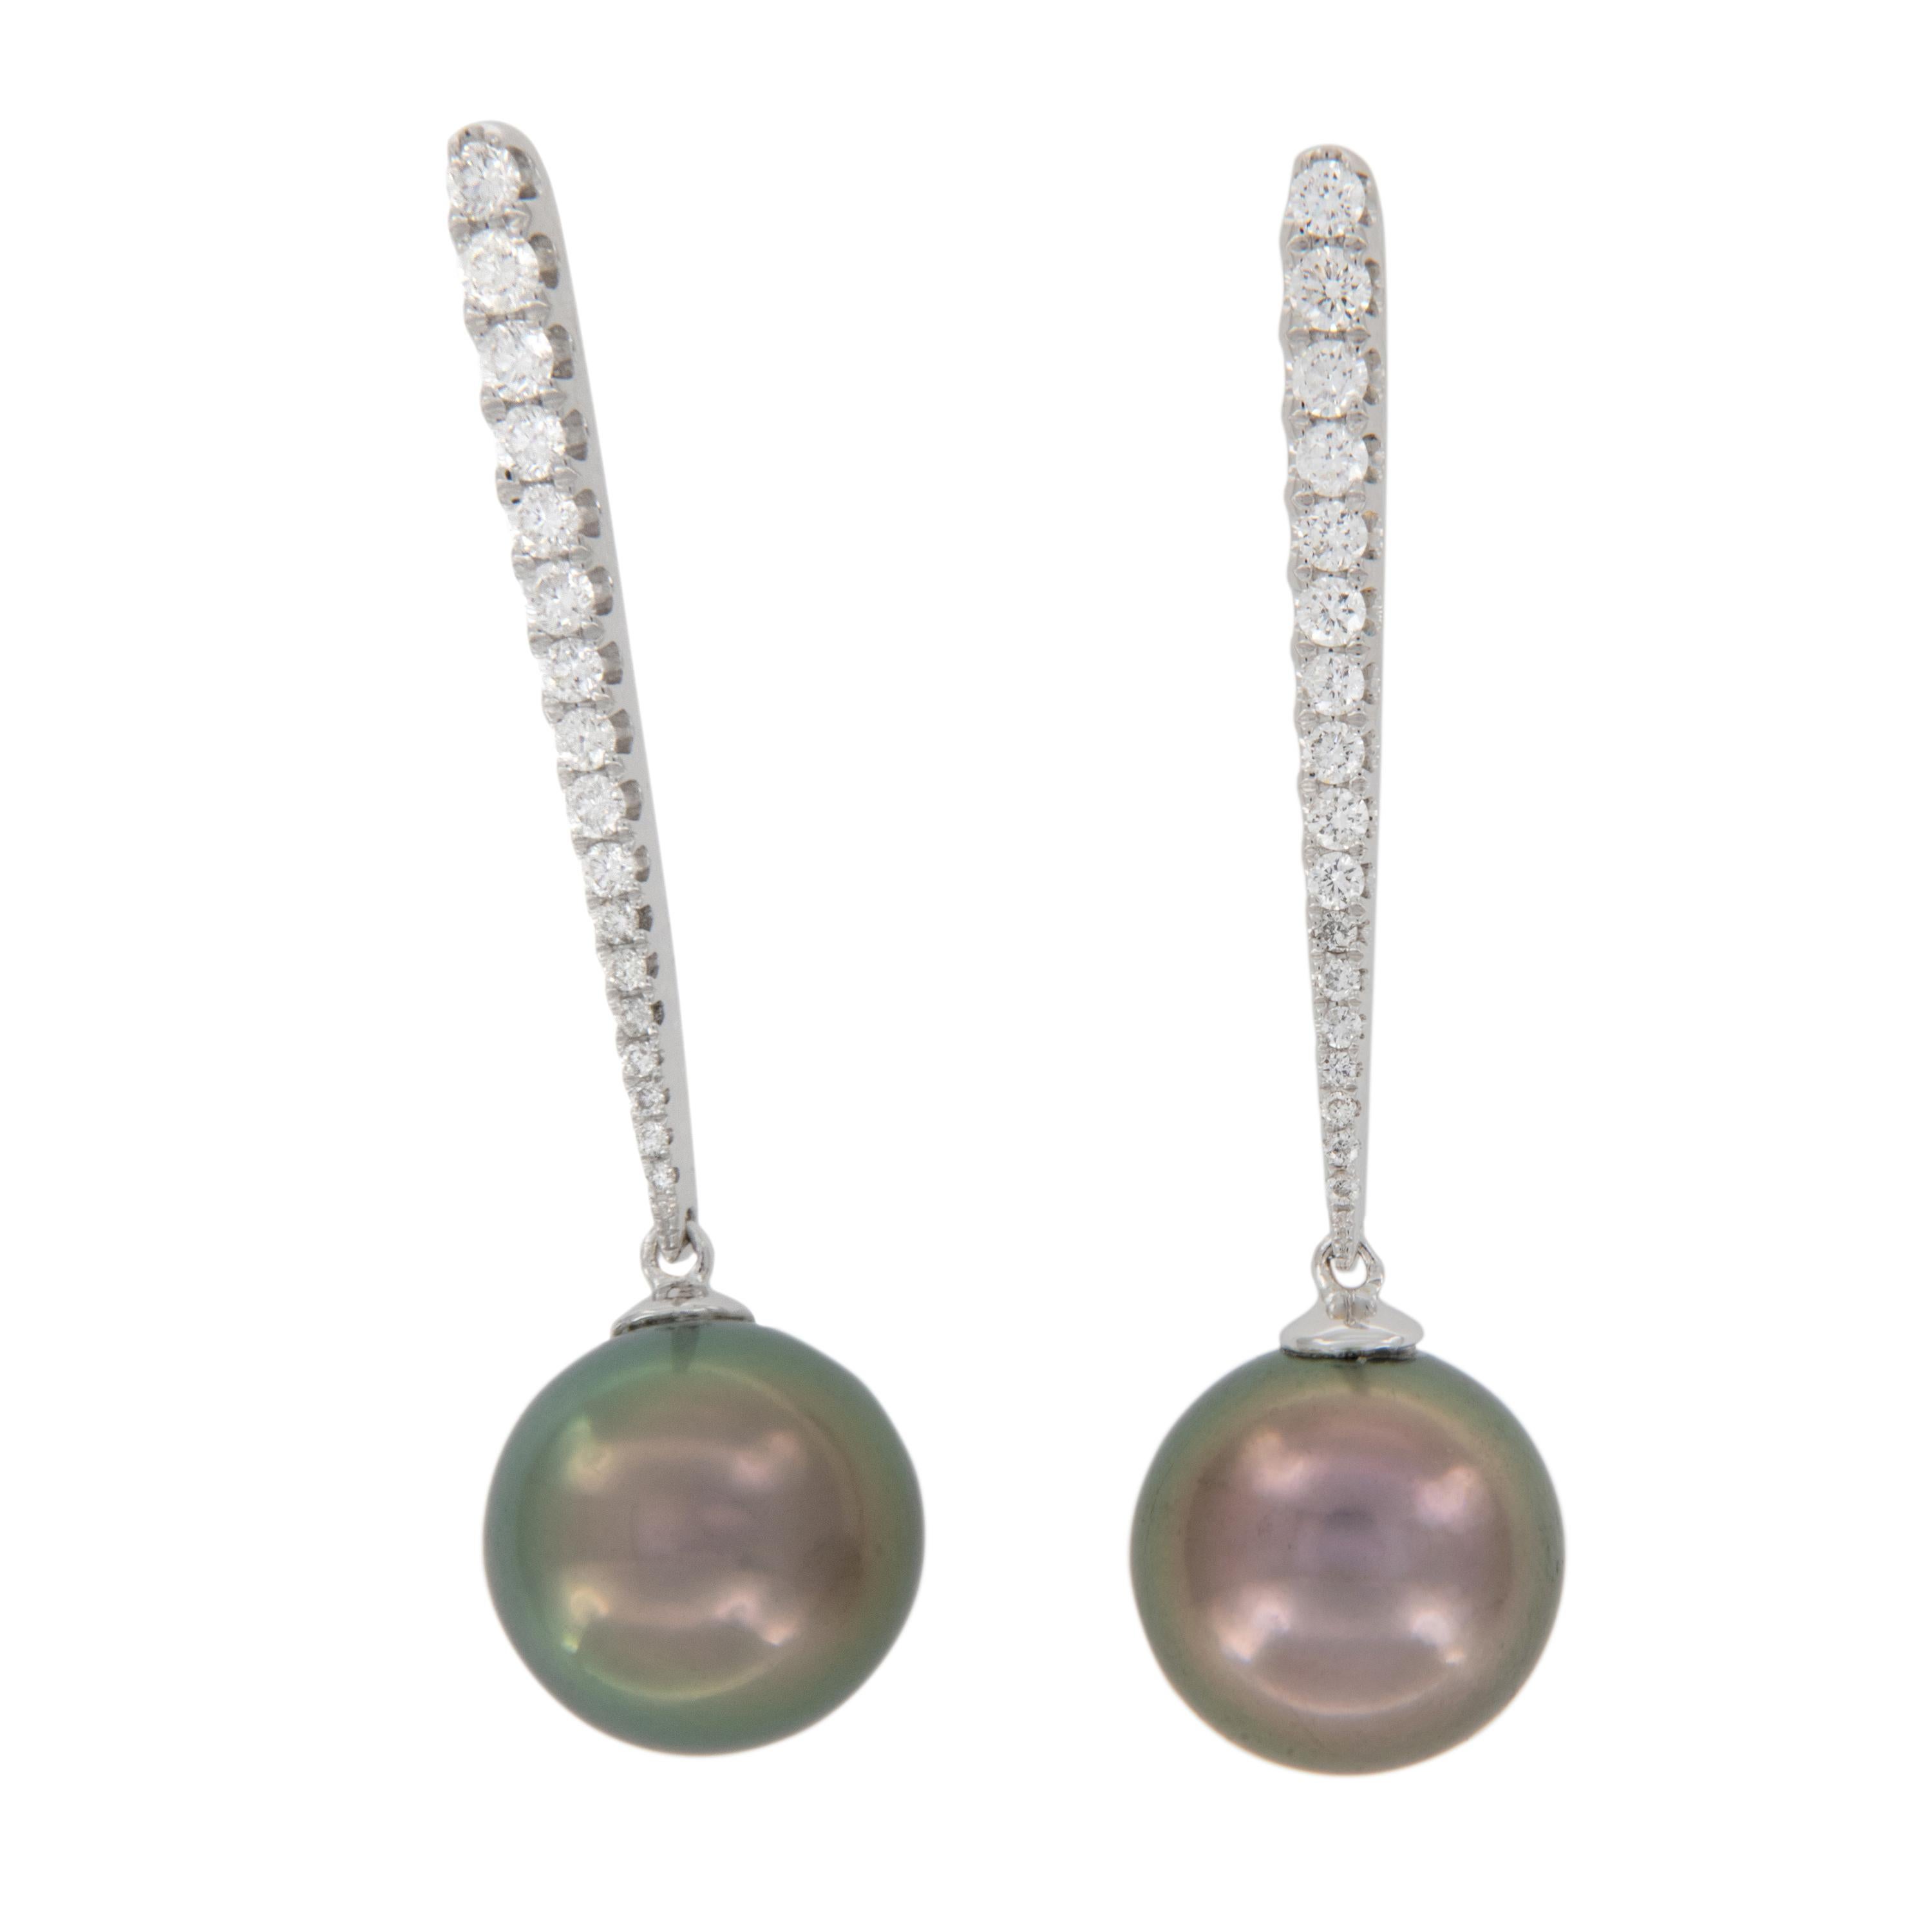 Tahiti-Perlen sind die einzigen natürlichen Perlen, die ein vollständiges Farbspektrum aufweisen. Die schwarzlippigen Perlenaustern haben einen regenbogenartigen Mantel, der alle natürlichen Farben aufweist. Diese Farben kommen in Tahiti-Perlen auf